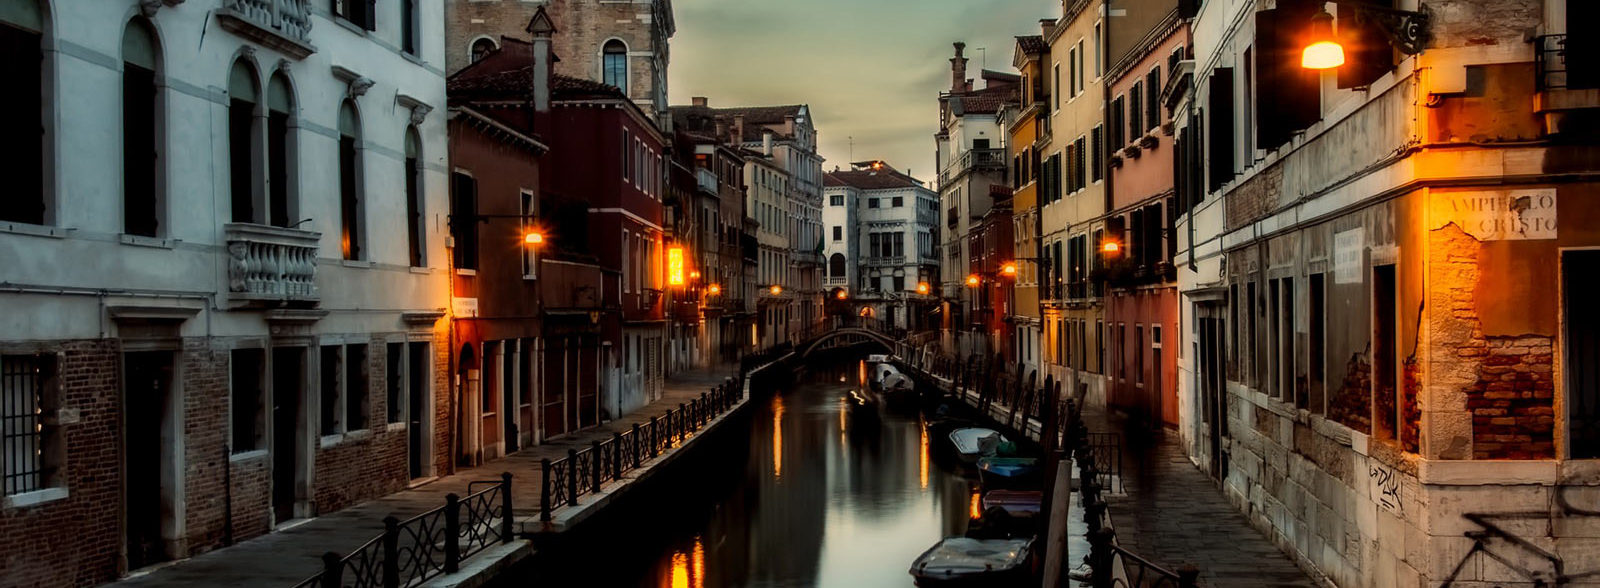 Cosa fare a Venezia: i luoghi di interesse da non perdere